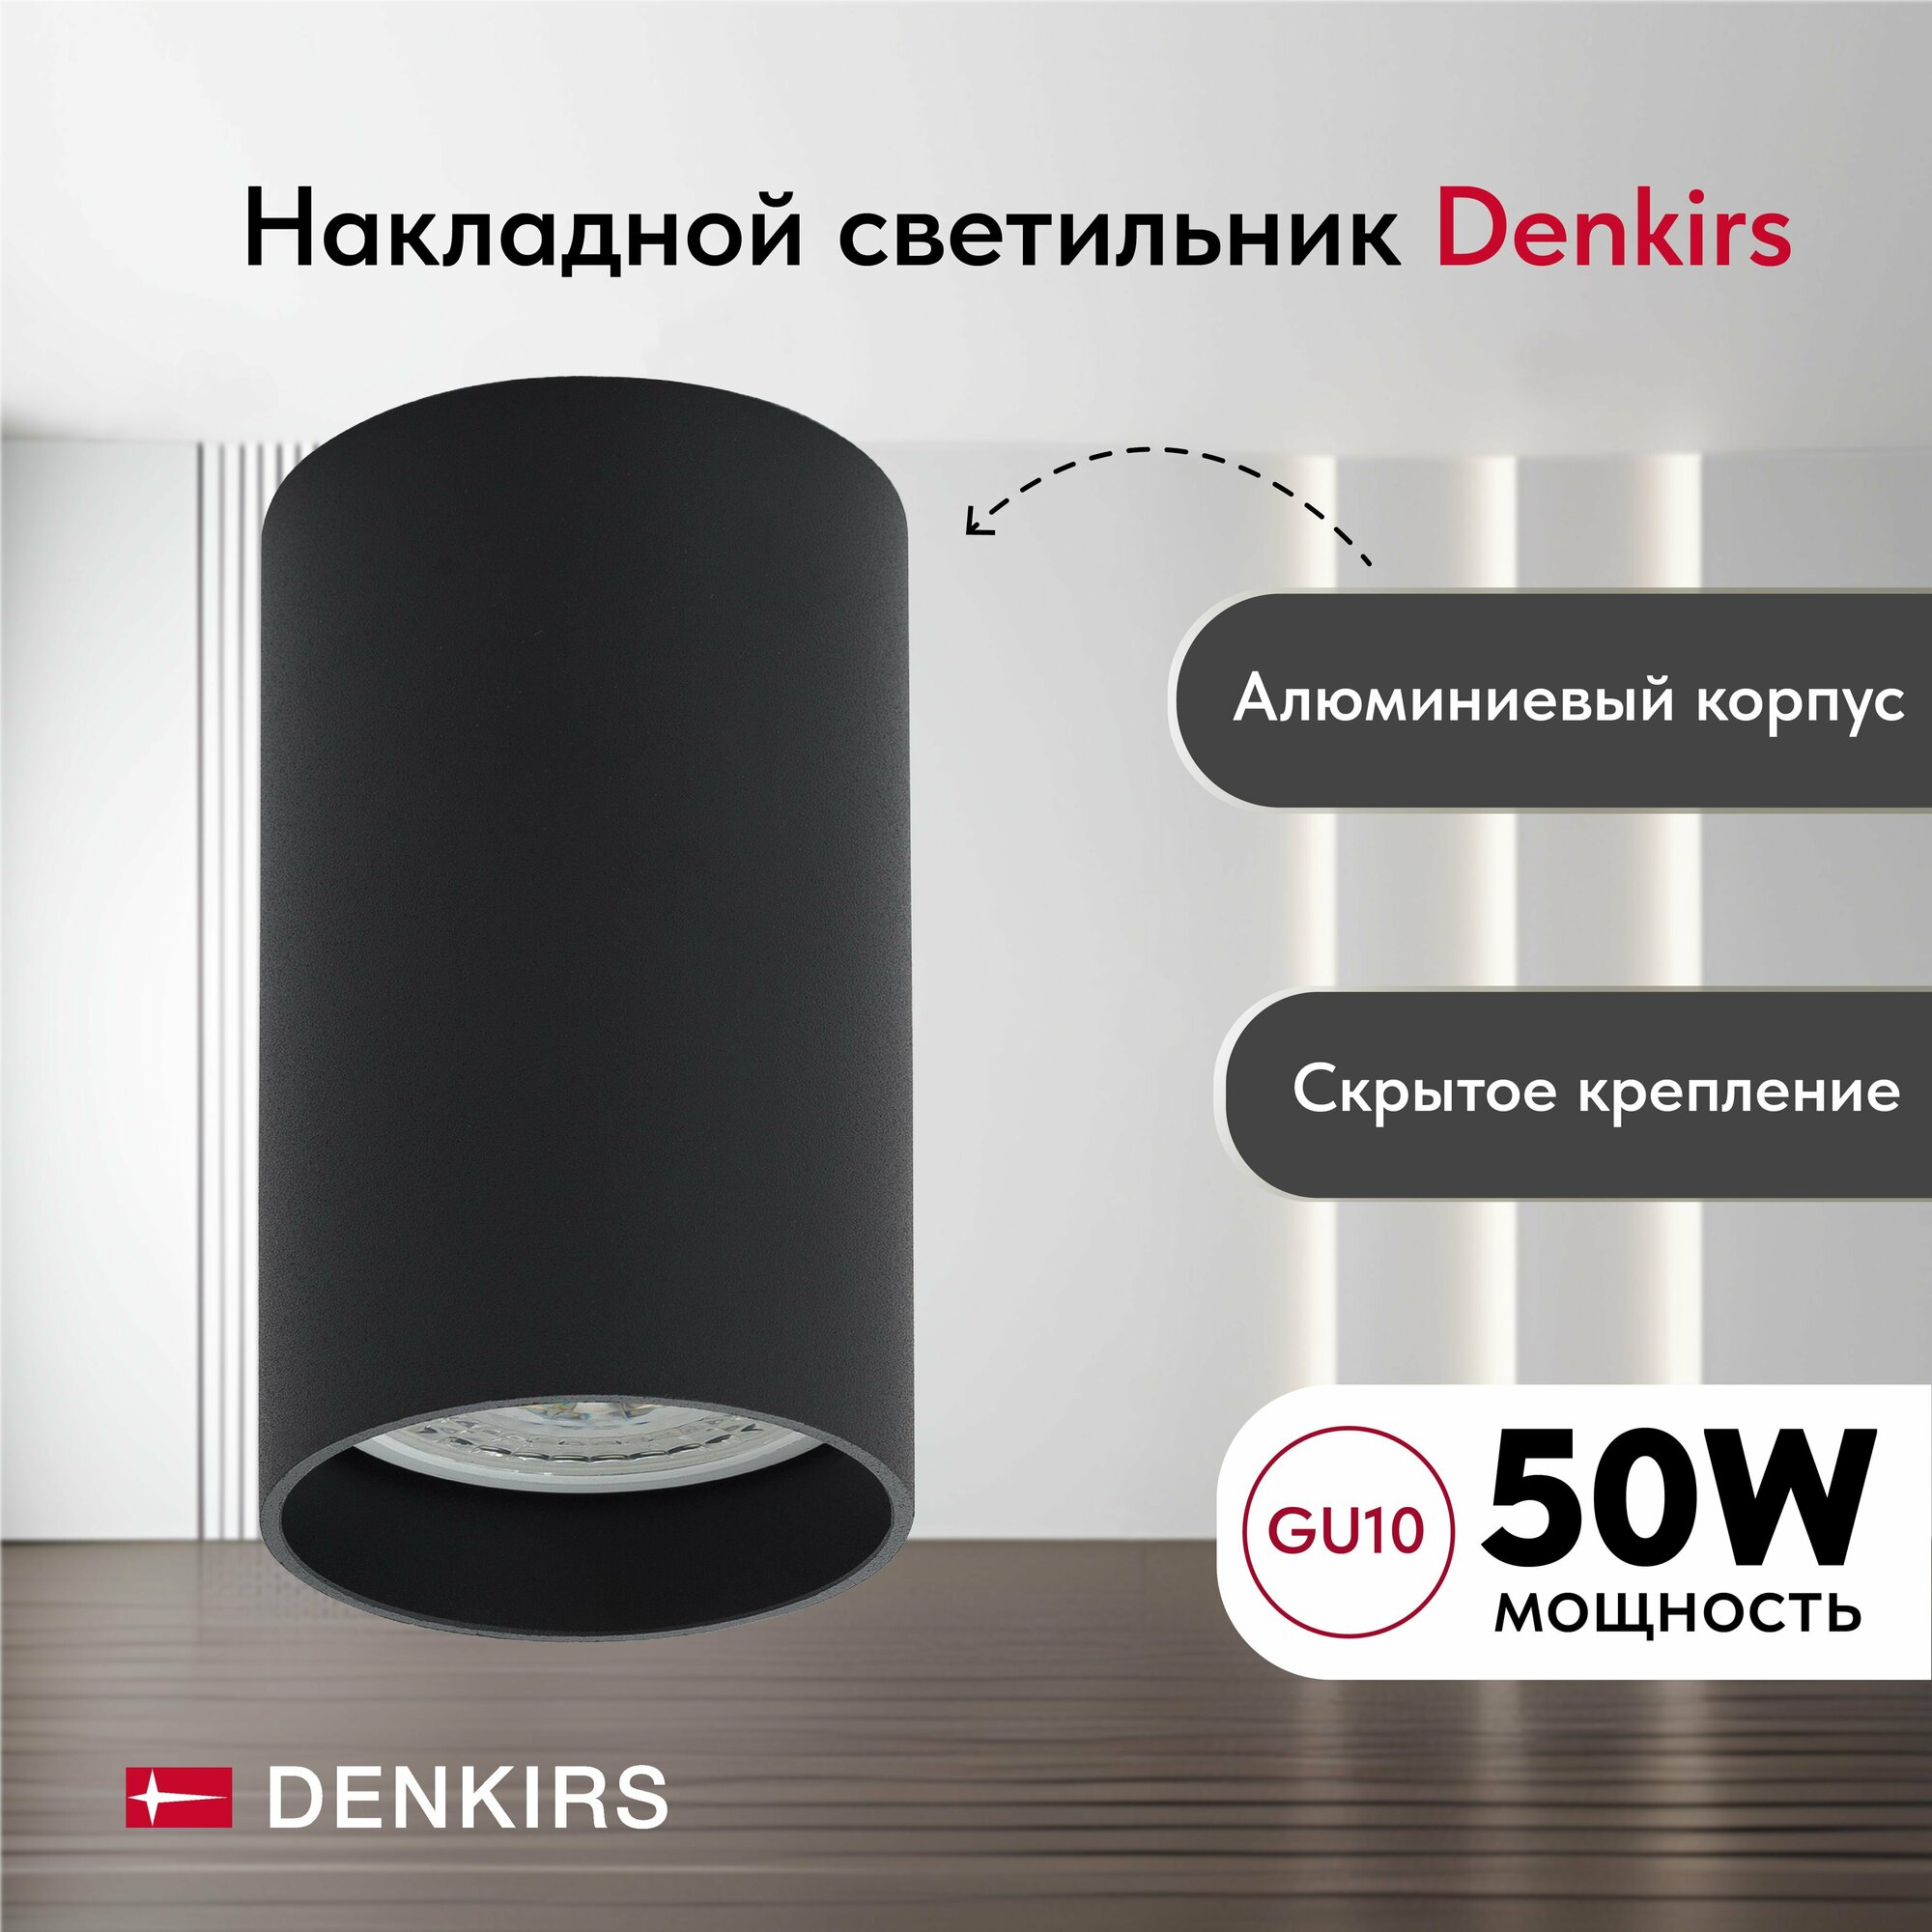 Светильник потолочный накладной DENKIRS DK2008-BK IP 20, 50 Вт, GU10, черный, алюминий